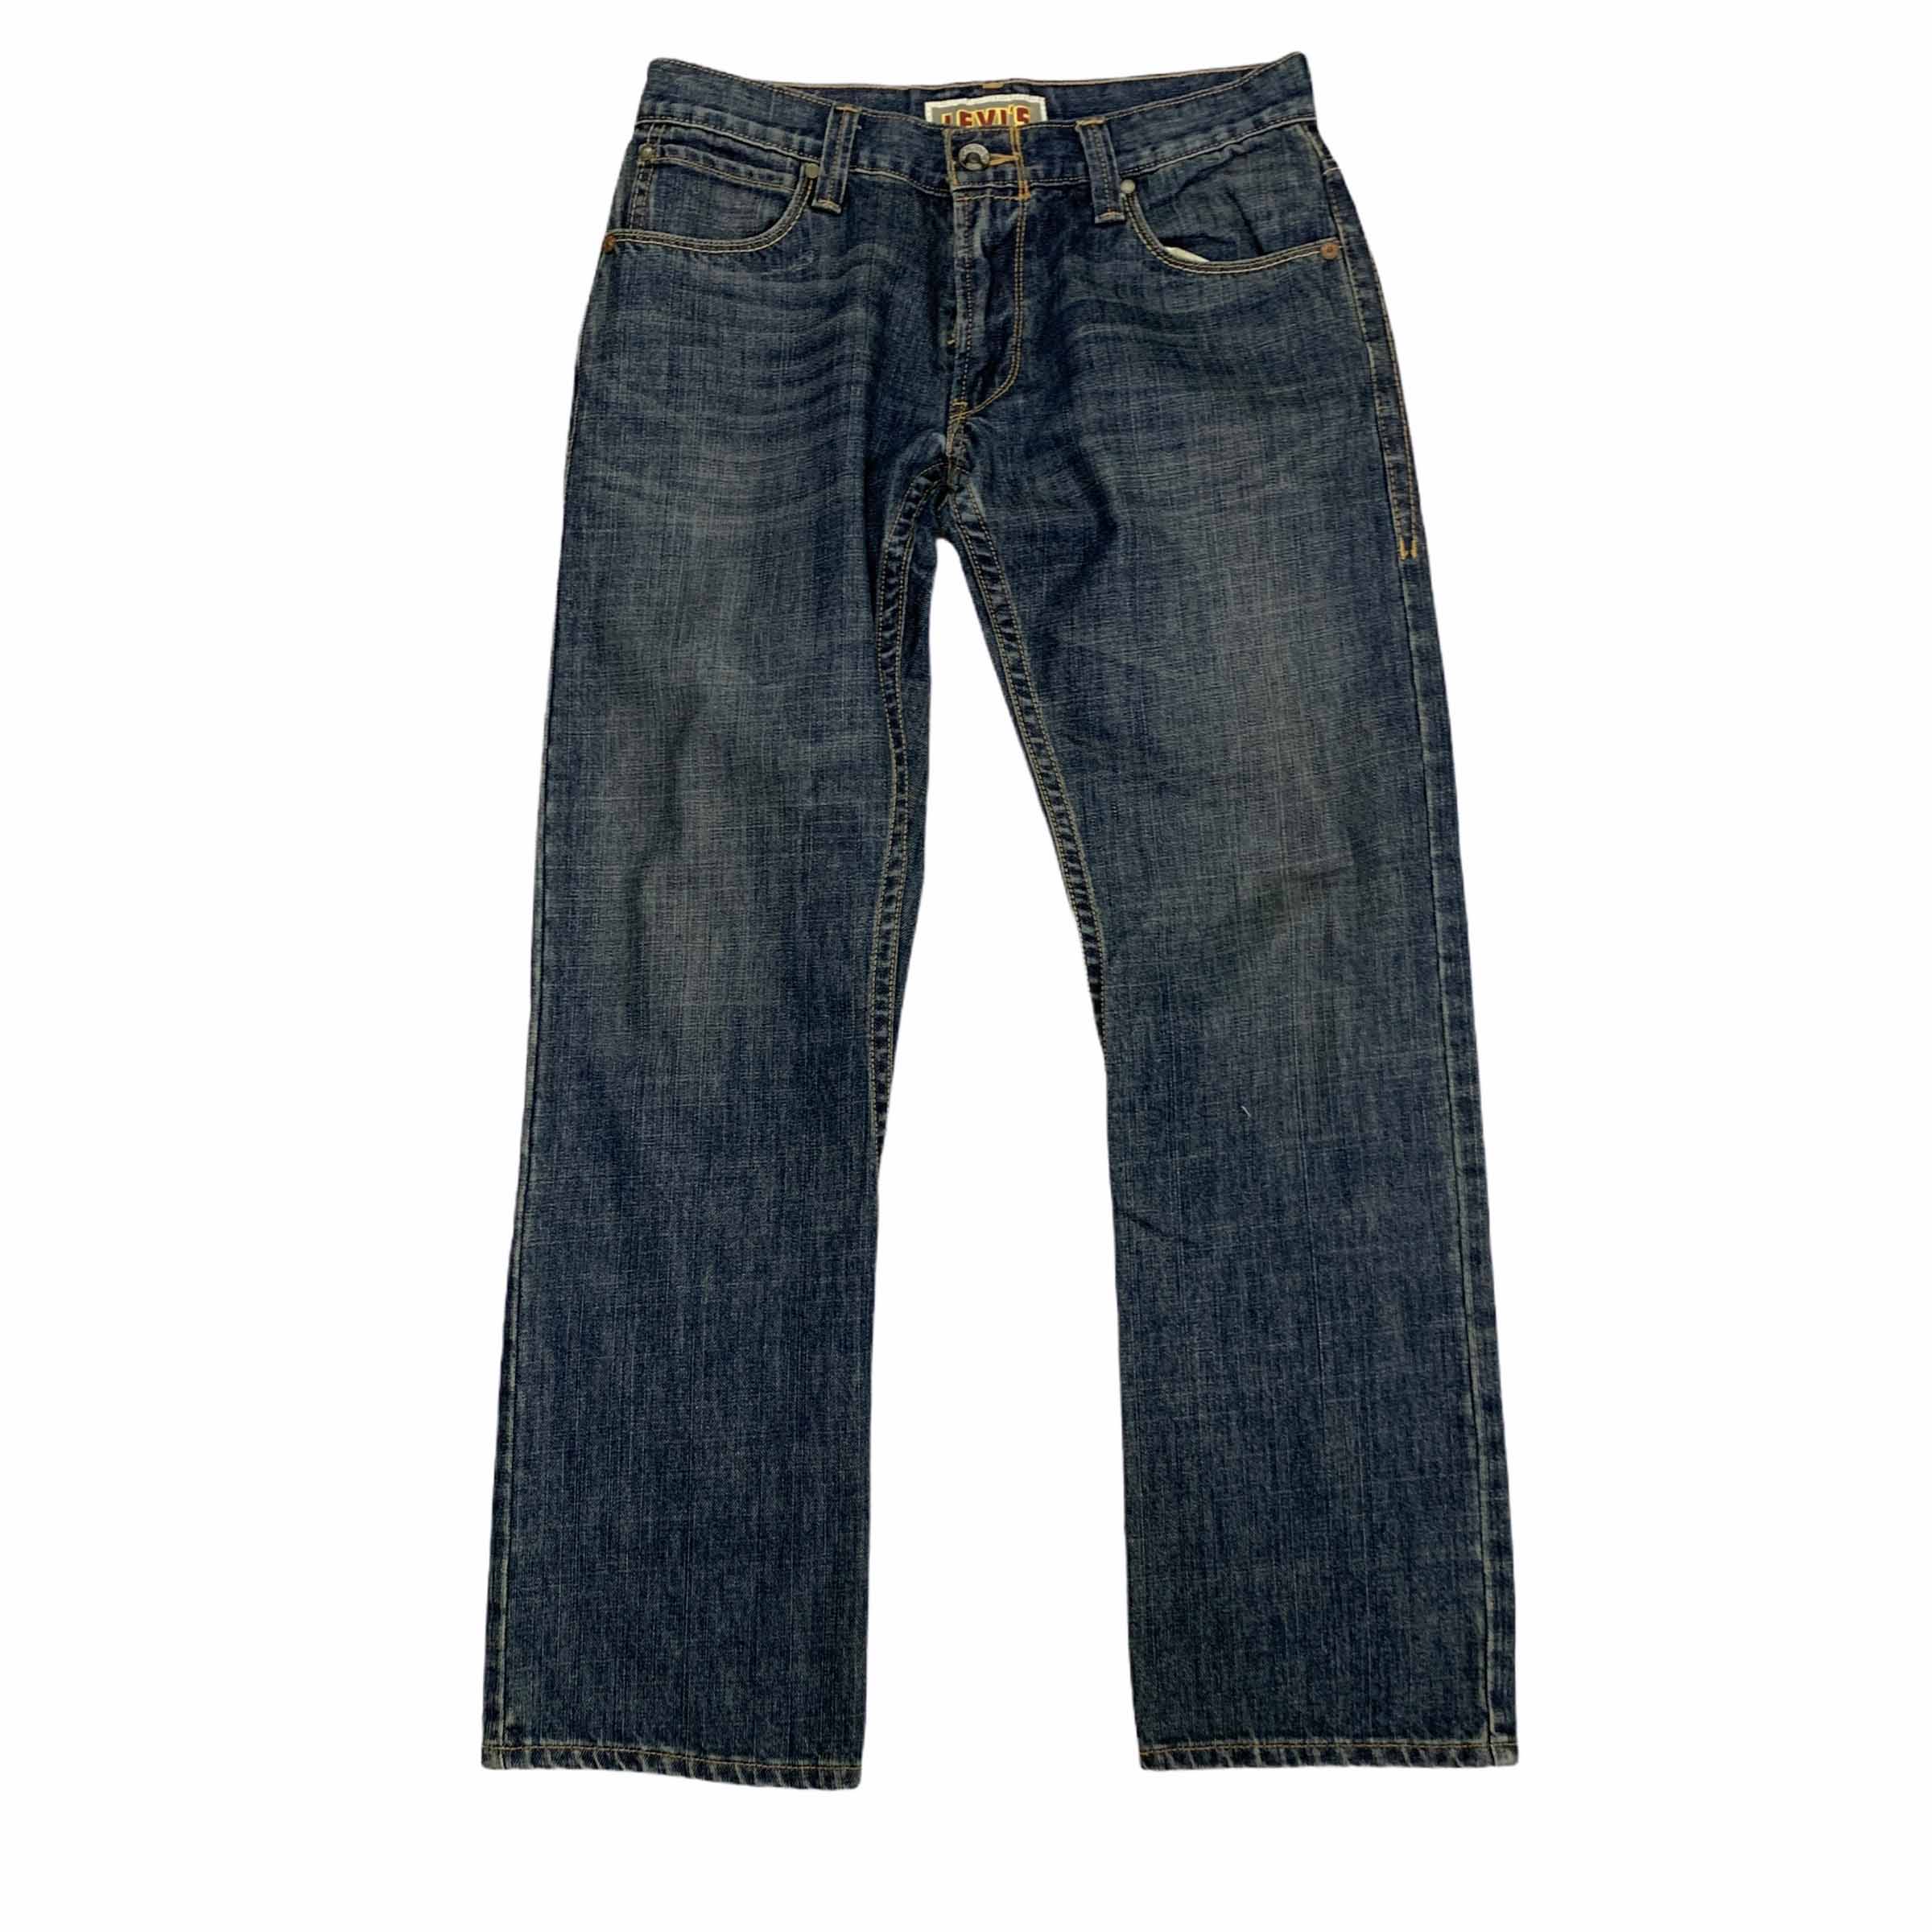 [Levis] (Vintage) 514 Denim pants - Size 31/32